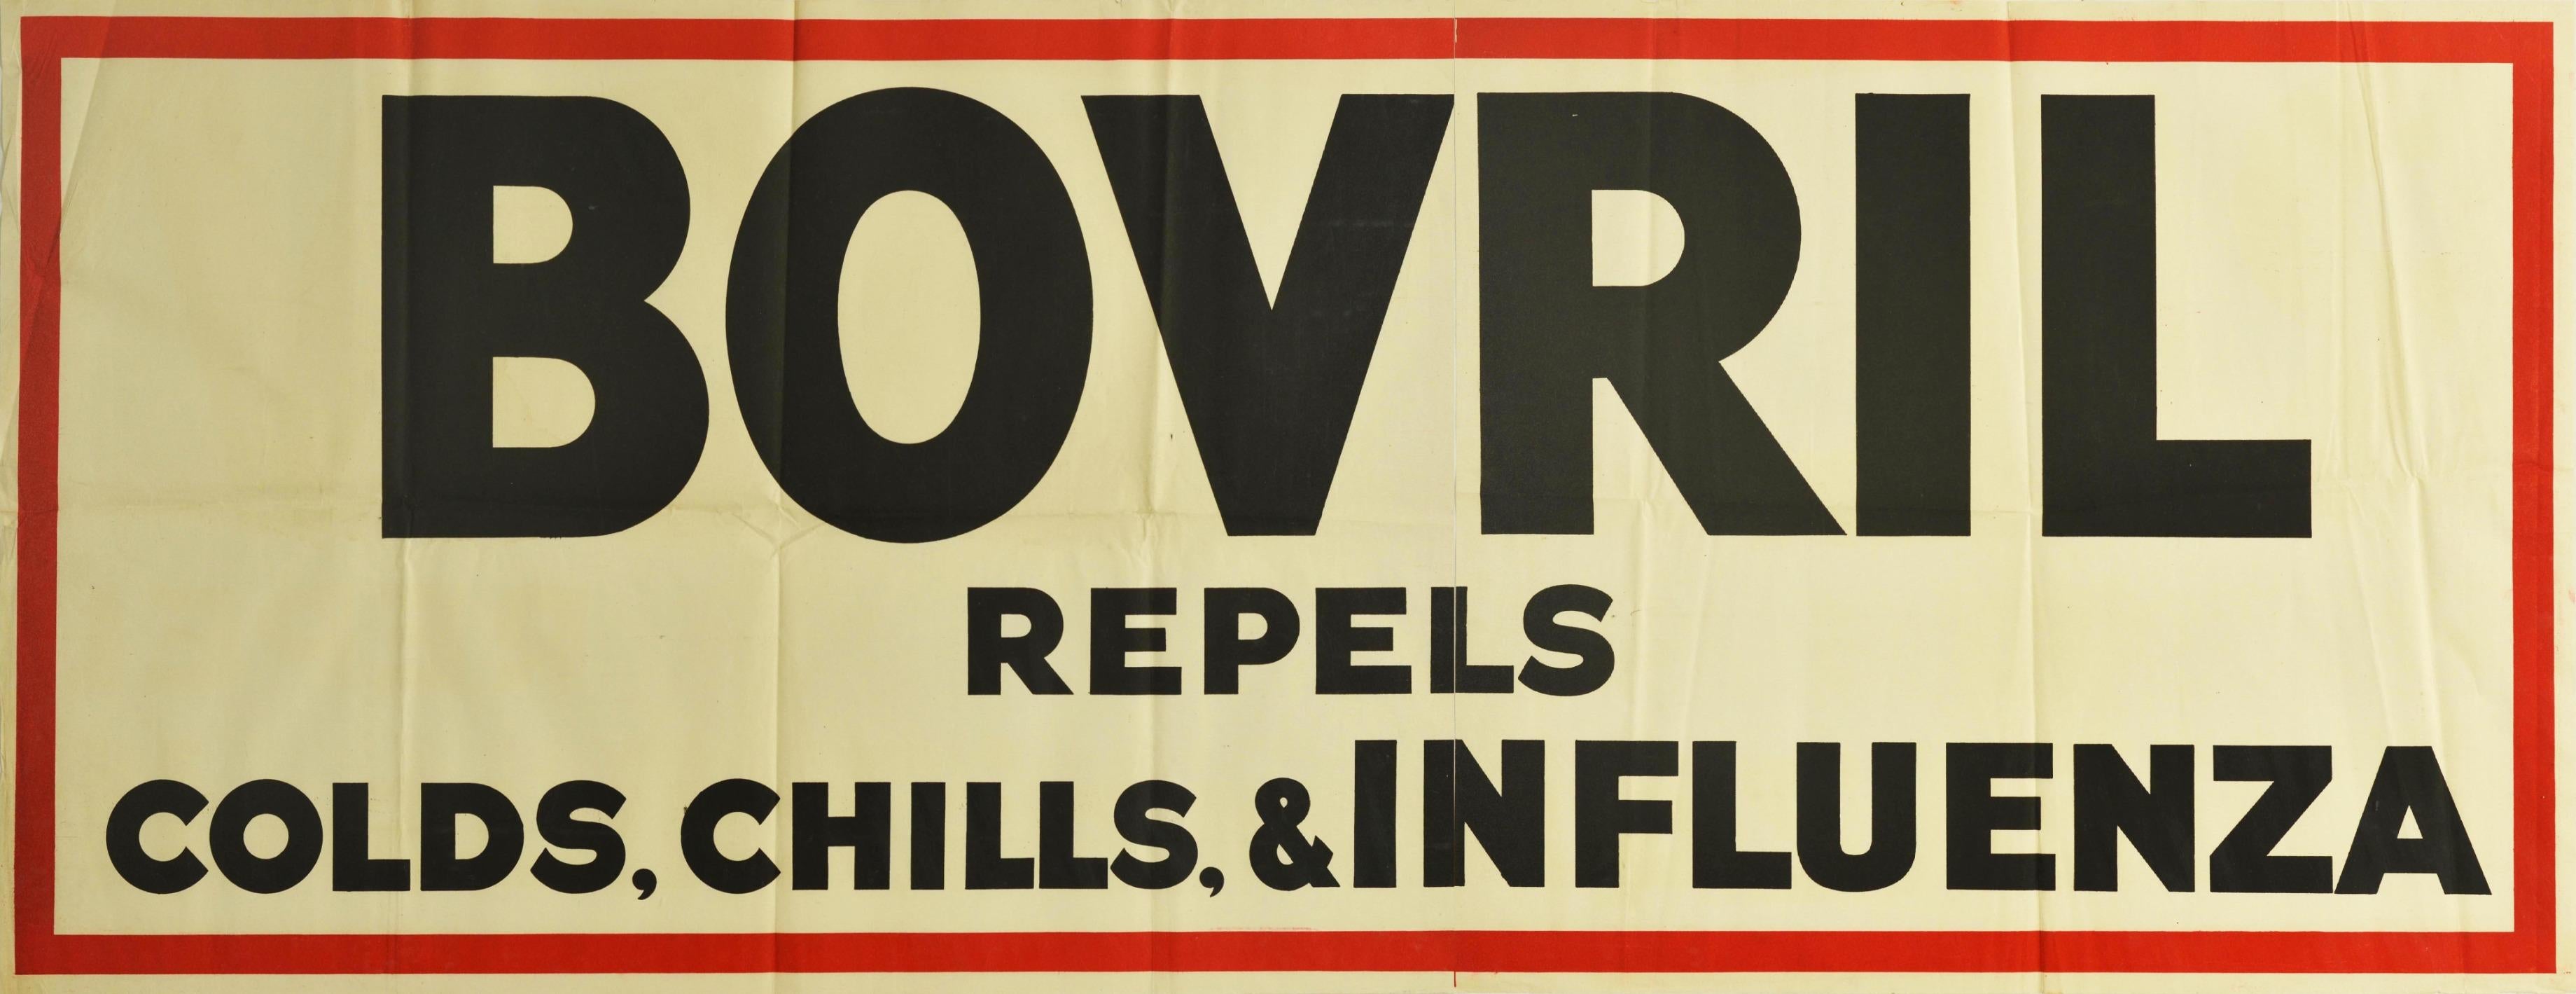 Affiche publicitaire originale pour Bovril - Bovril repousse les rhumes, les refroidissements et la grippe - avec des lettres noires sur un fond blanc dans un cadre rouge épais. Imprimée en Grande-Bretagne dans les années 30, cette campagne utilise